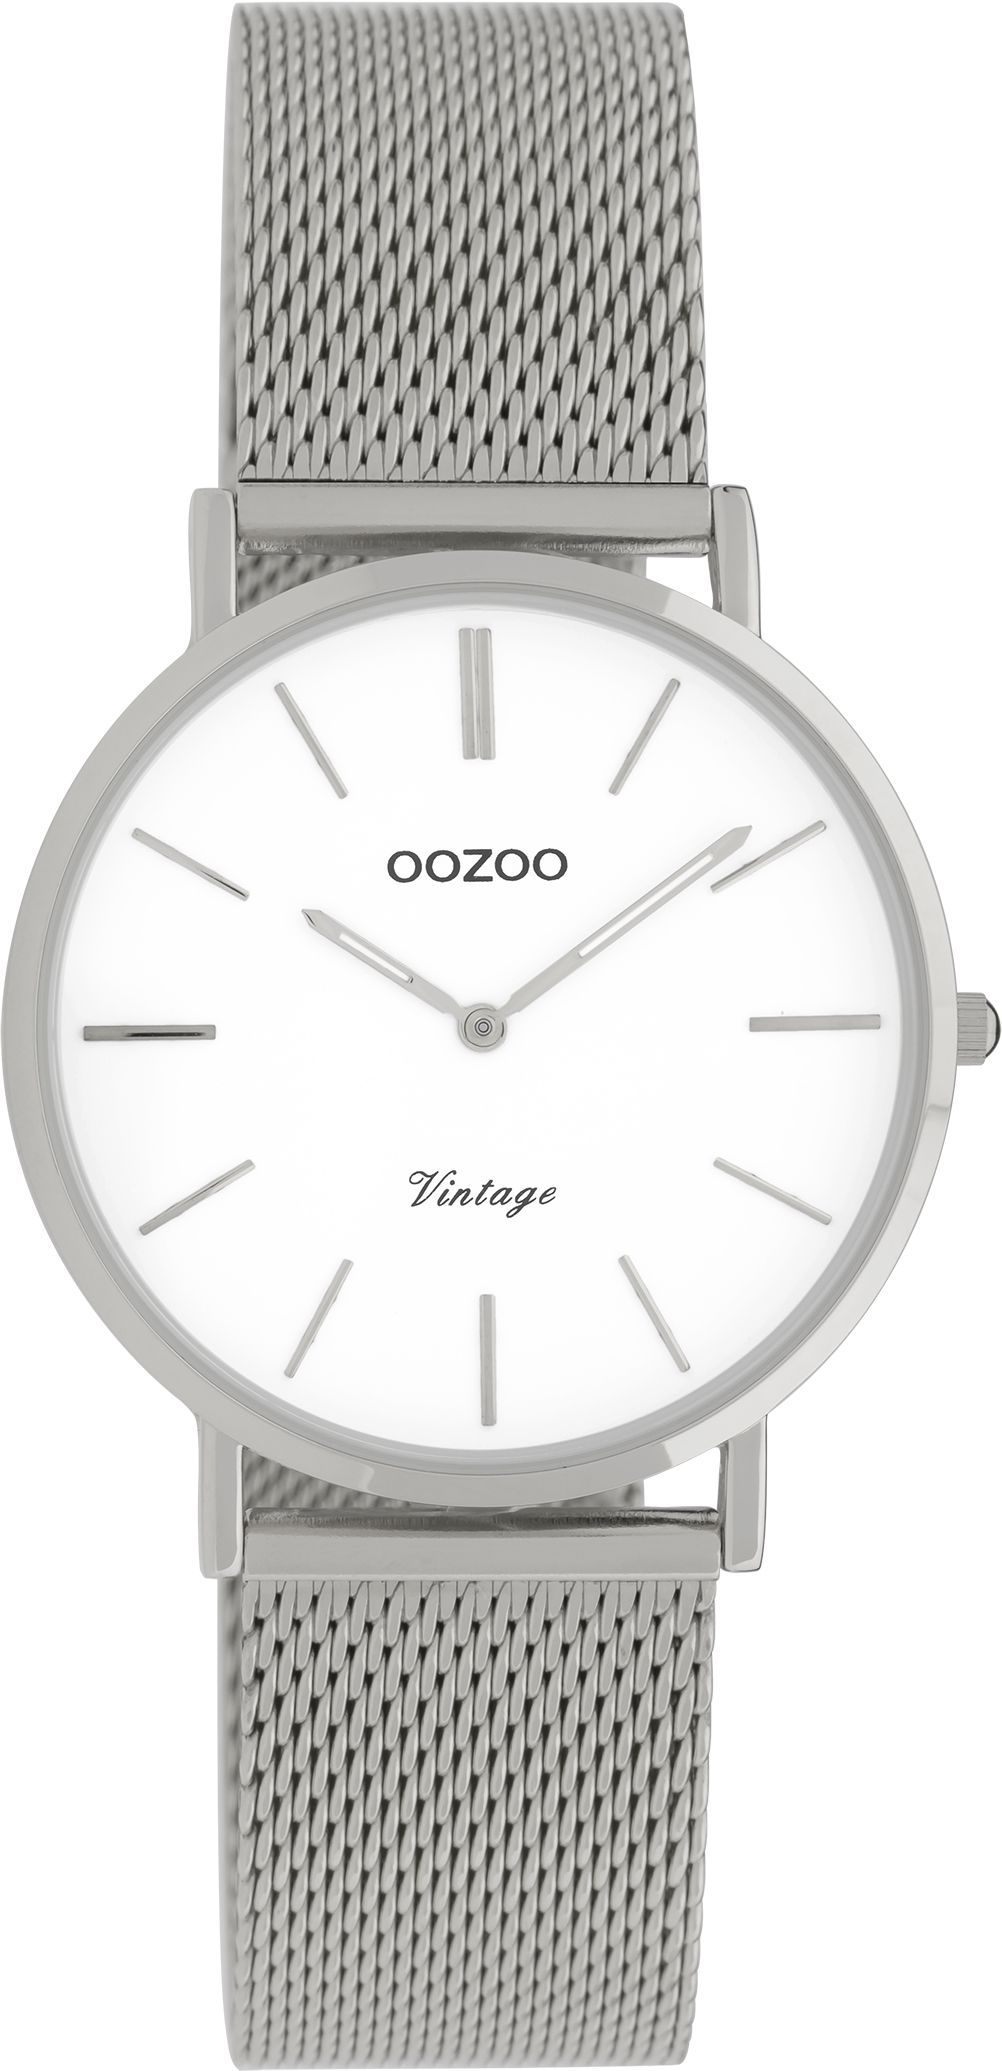 OOZOO Vintage C9903